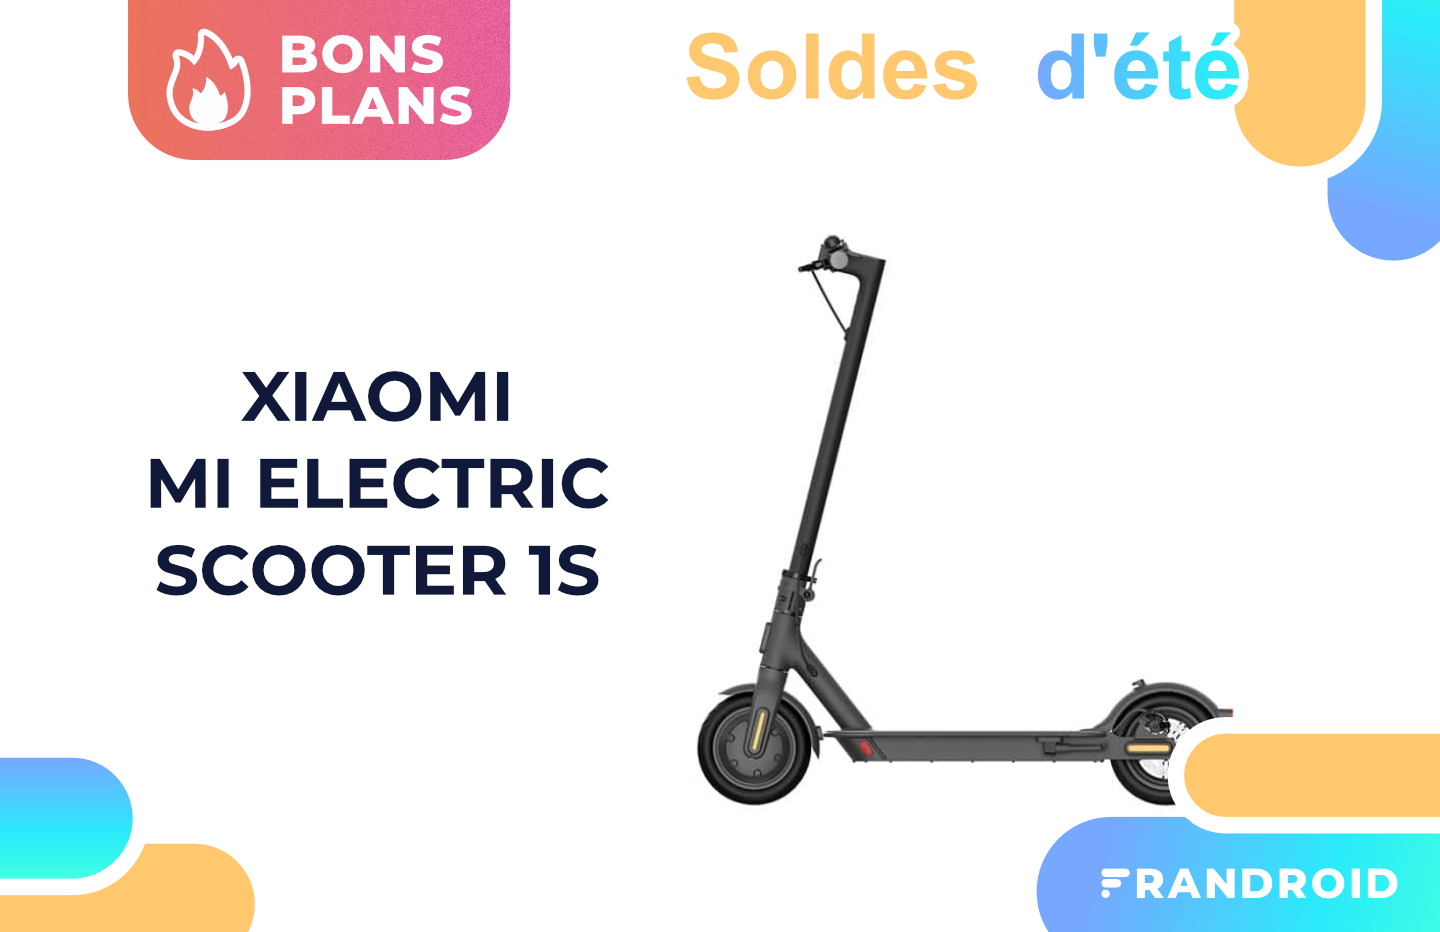 Trottinette électrique XIAOMI XIAOMI Mi Electric Scooter Essential Pas Cher  